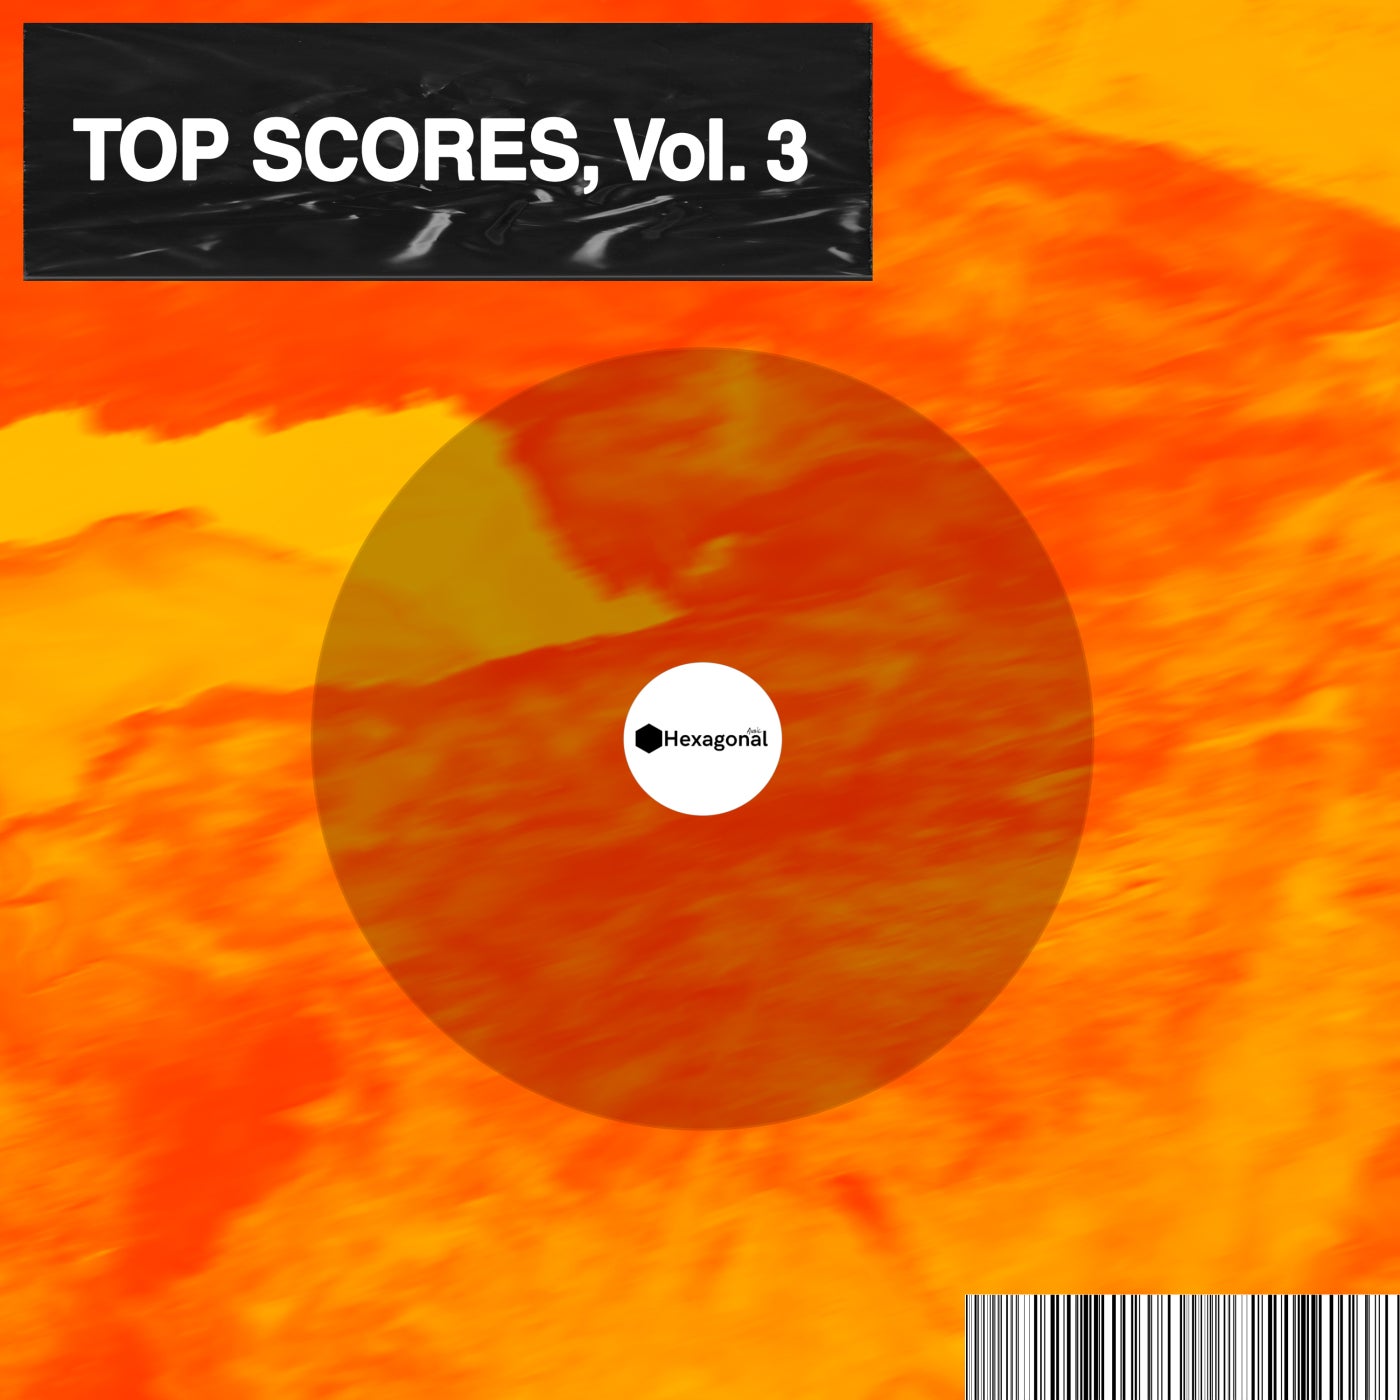 Top Scores, Vol. 3